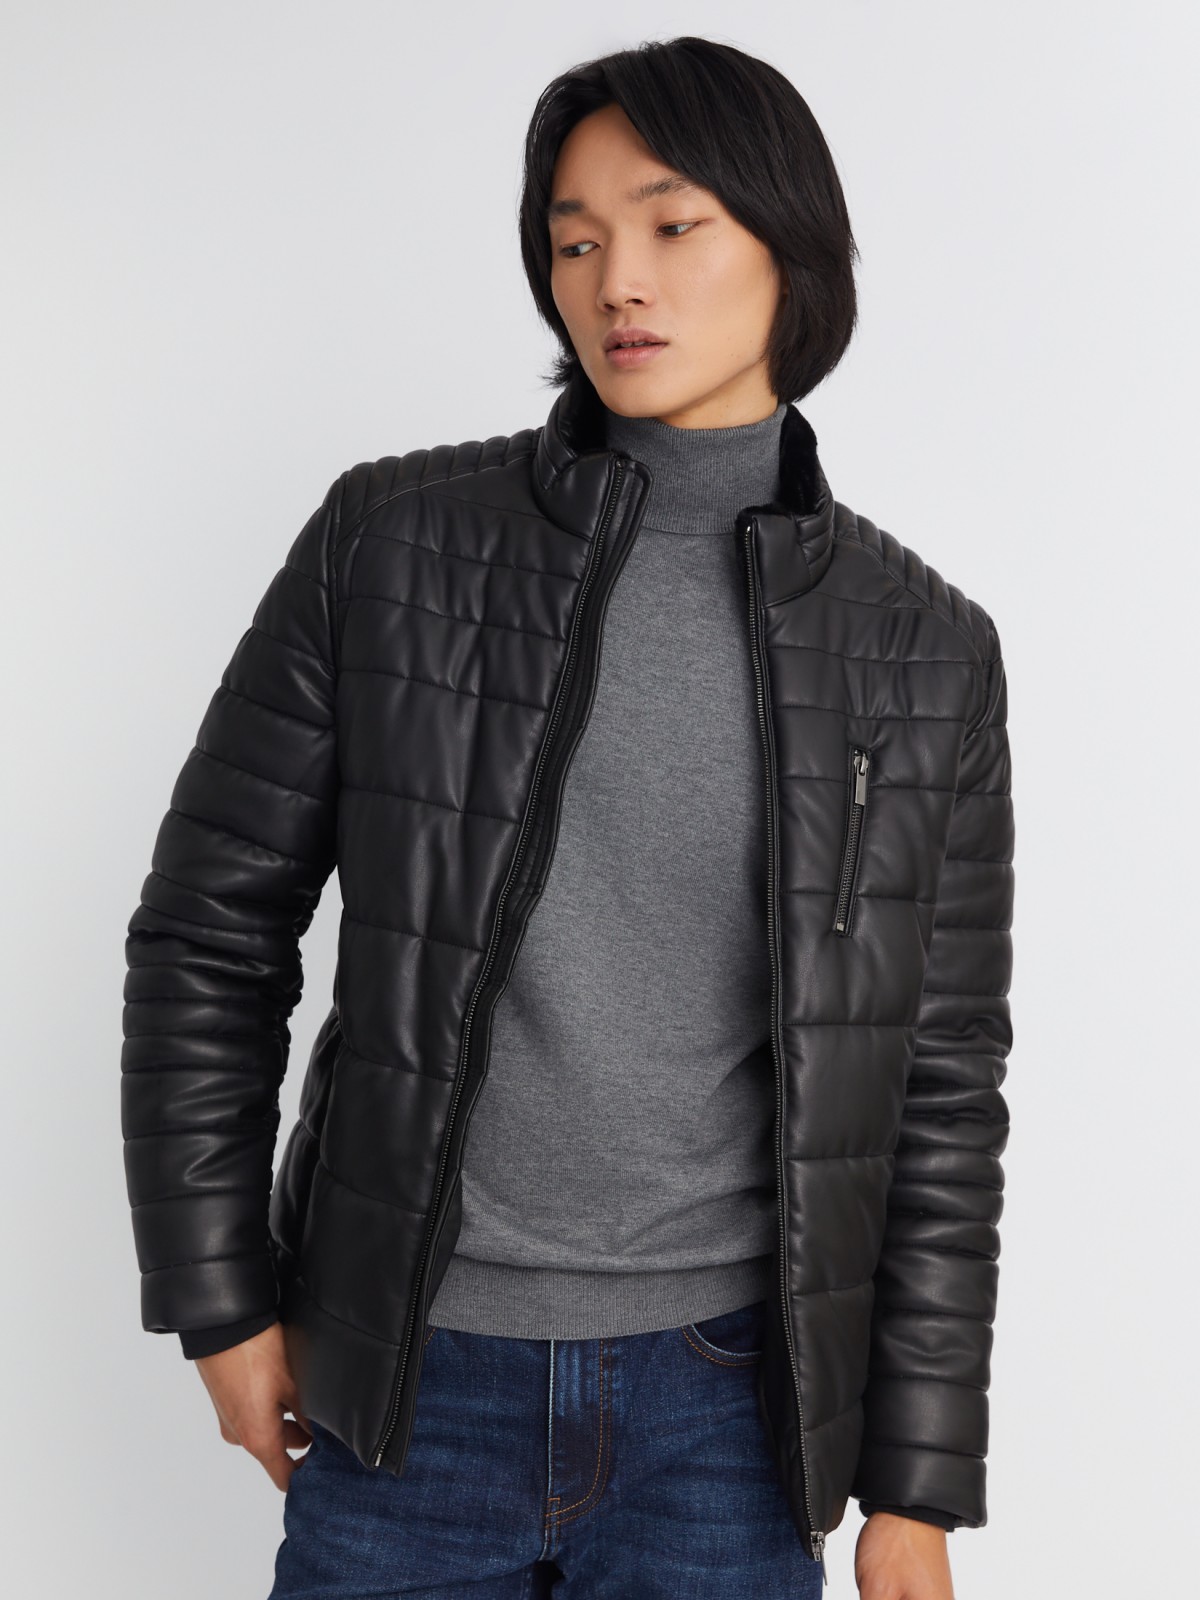 Тёплая стёганая куртка из экокожи на синтепоне с воротником-стойкой zolla 013345150014, цвет черный, размер S - фото 1